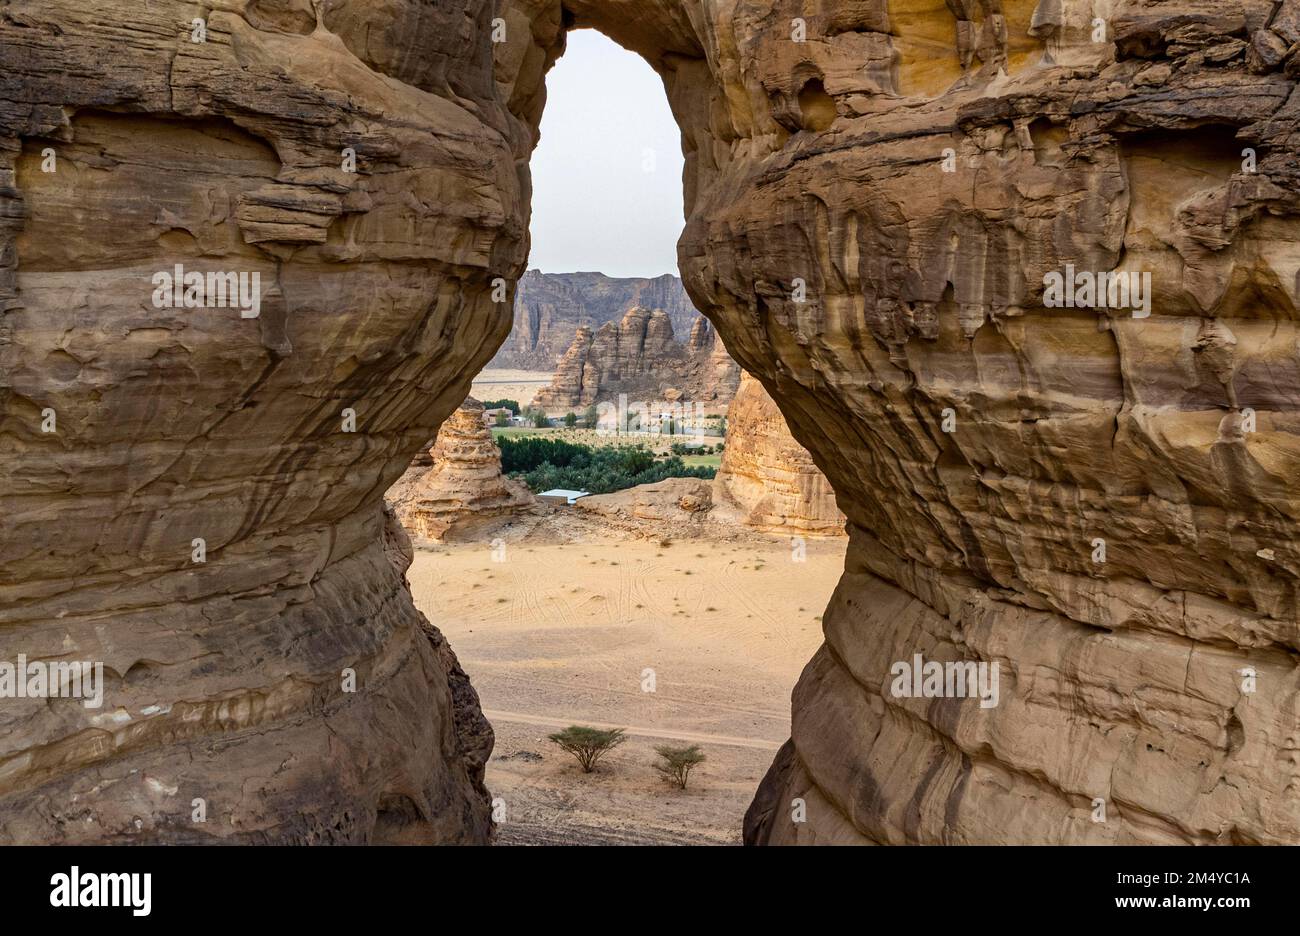 Agujero gigante en la roca, Al Ula, Reino de Arabia Saudita Foto de stock